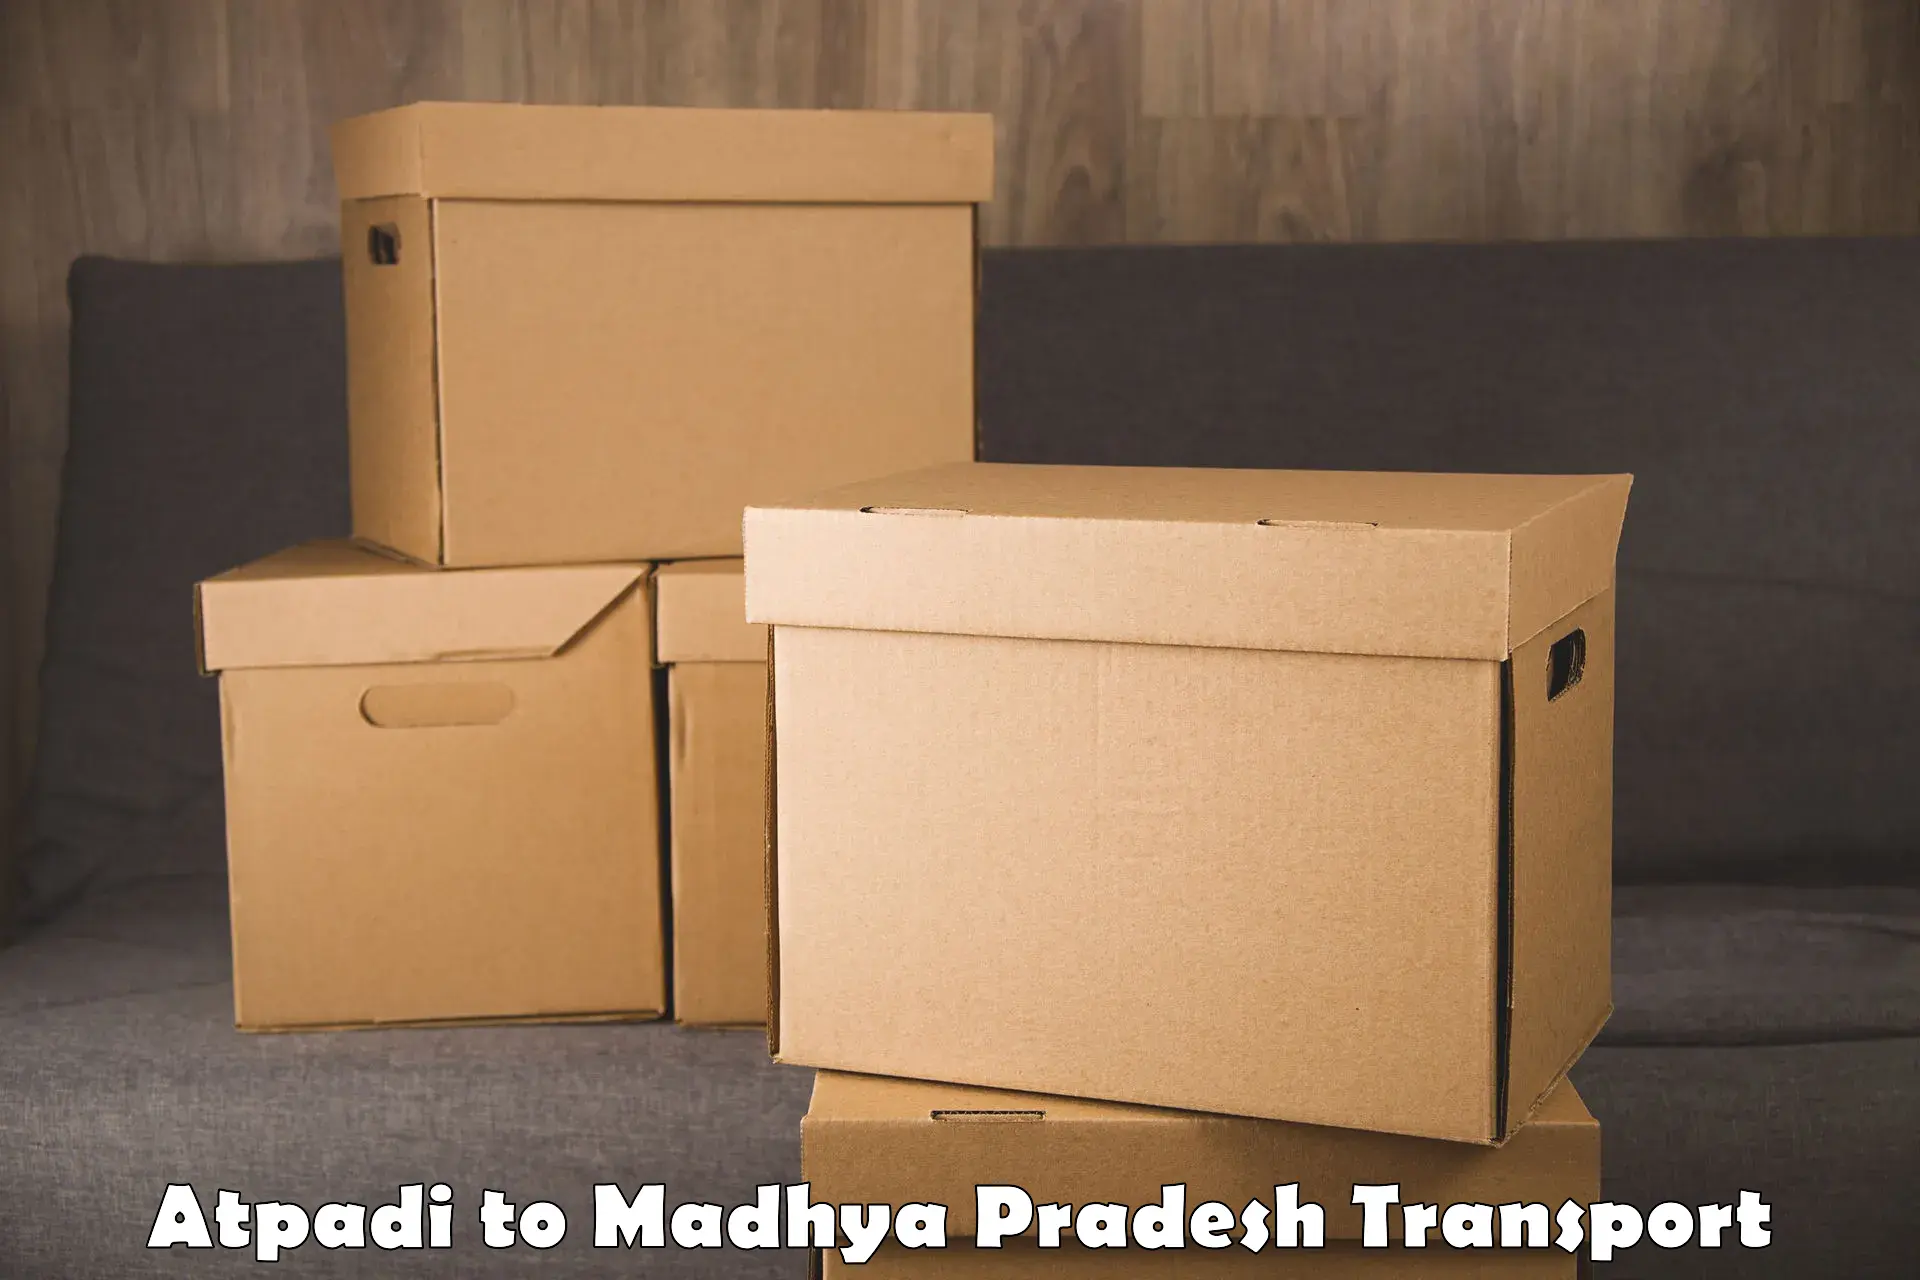 Shipping services Atpadi to Lavkush Nagar